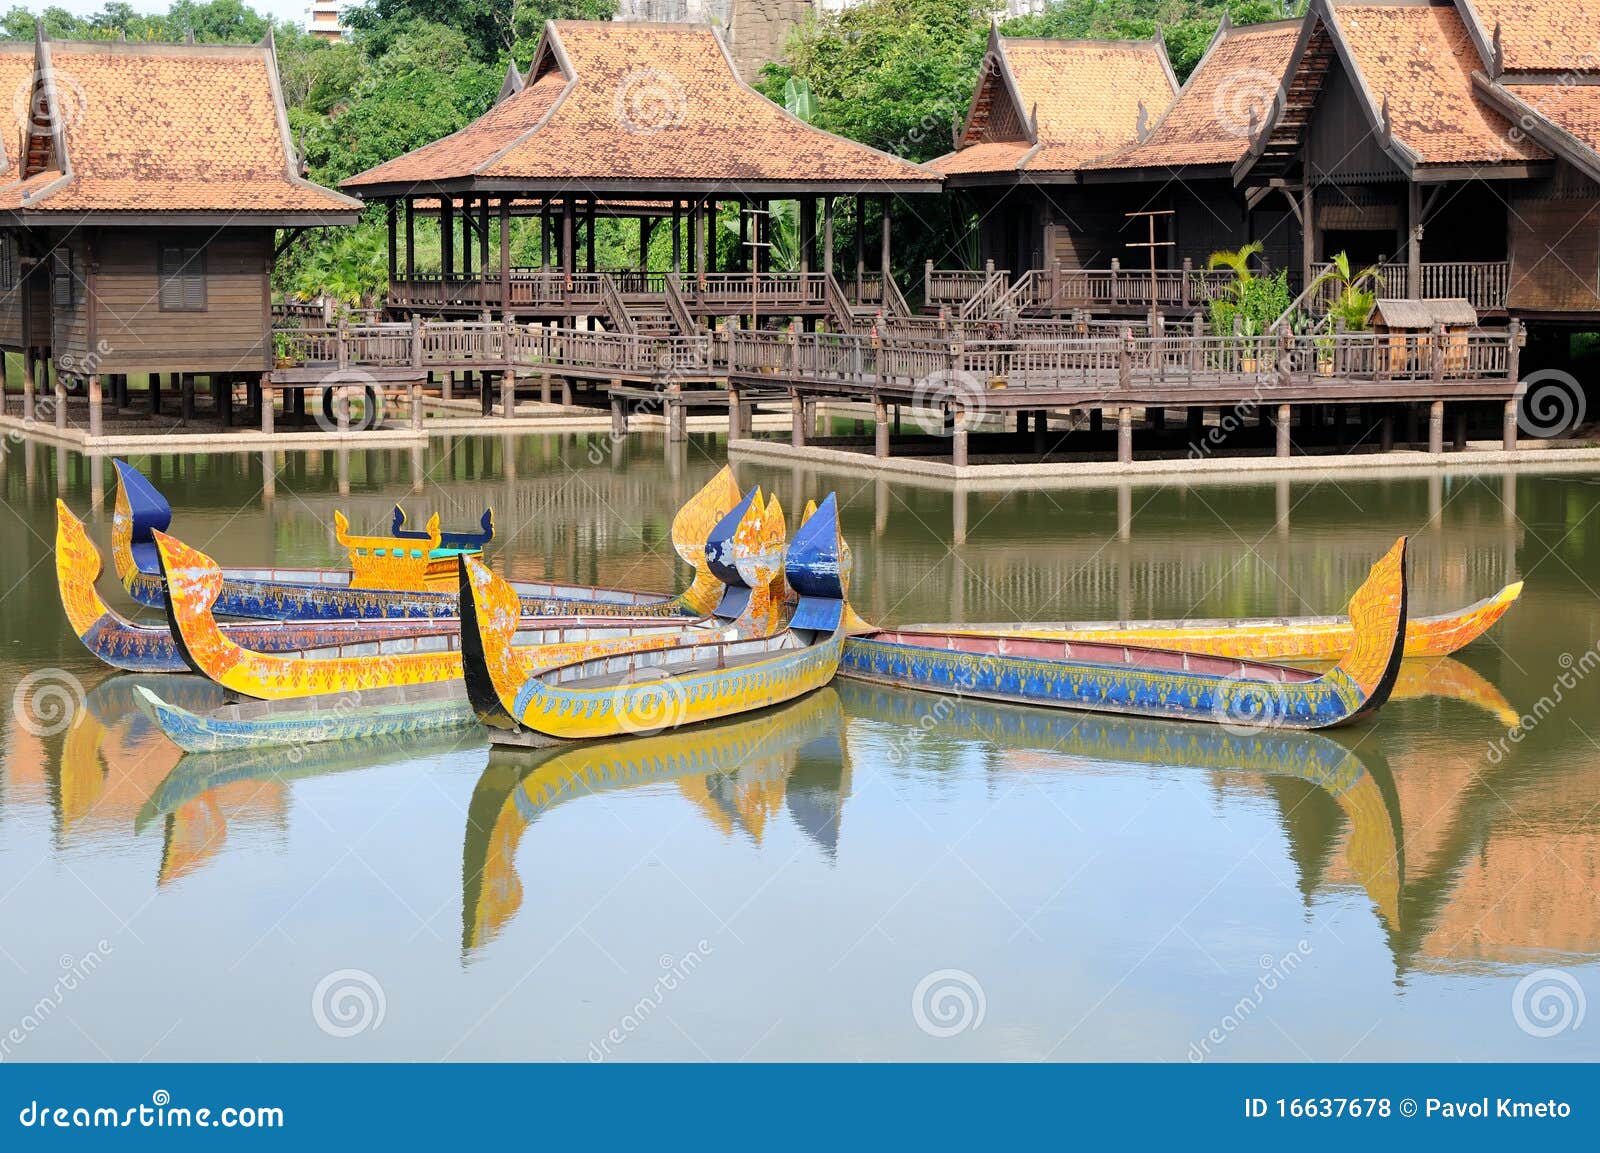 cambodia boat